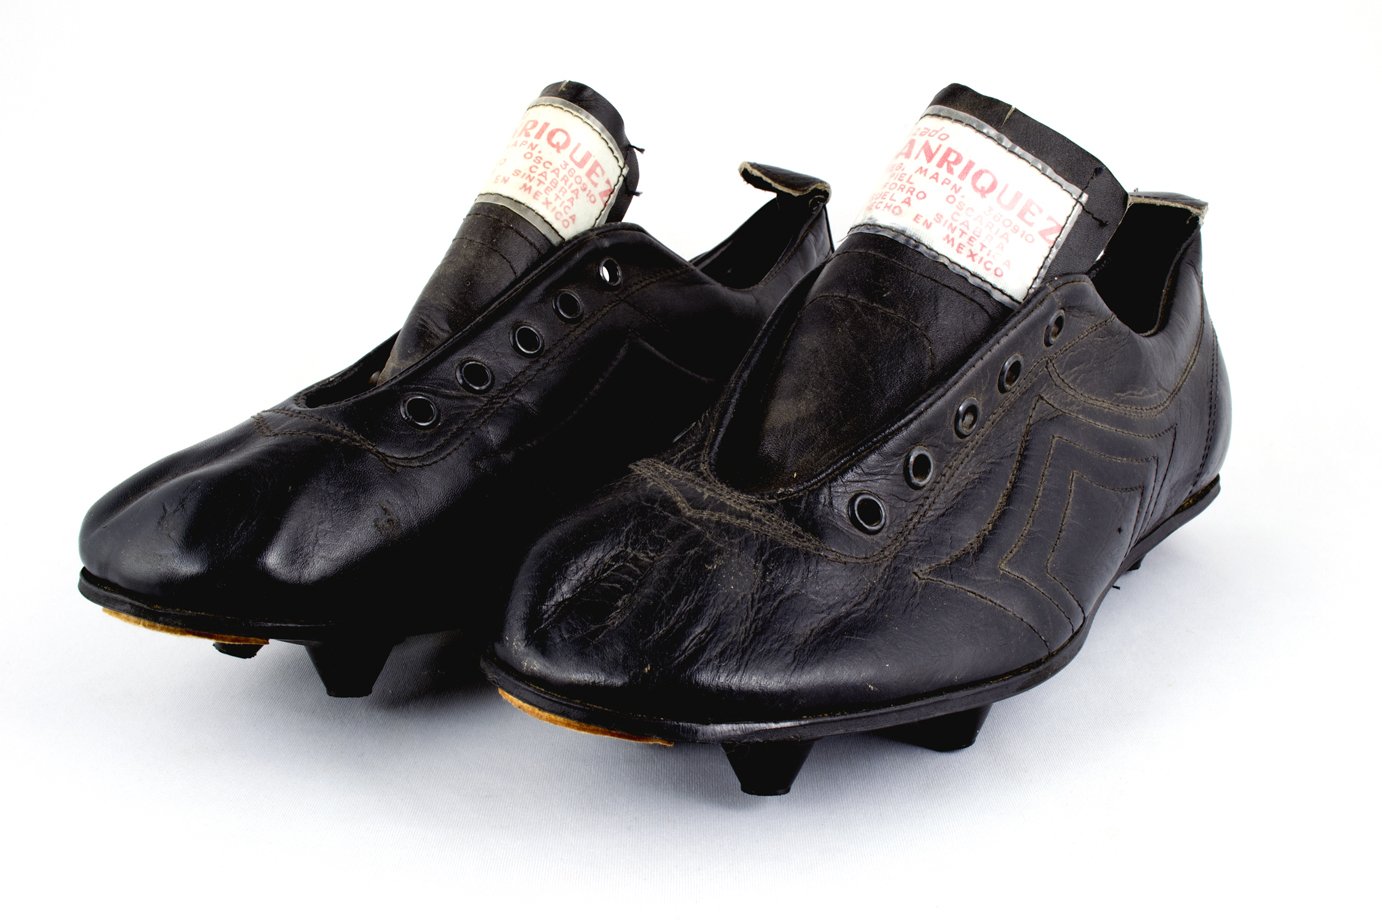 Twitter: "Los primeros modelos de #zapatos para # futbol, eran de cuero rígido y clavos incrustados en una suela de #GolesyPasiones #futbolMexicano #VamosALMODO https://t.co/PWTpelYTOq" / Twitter